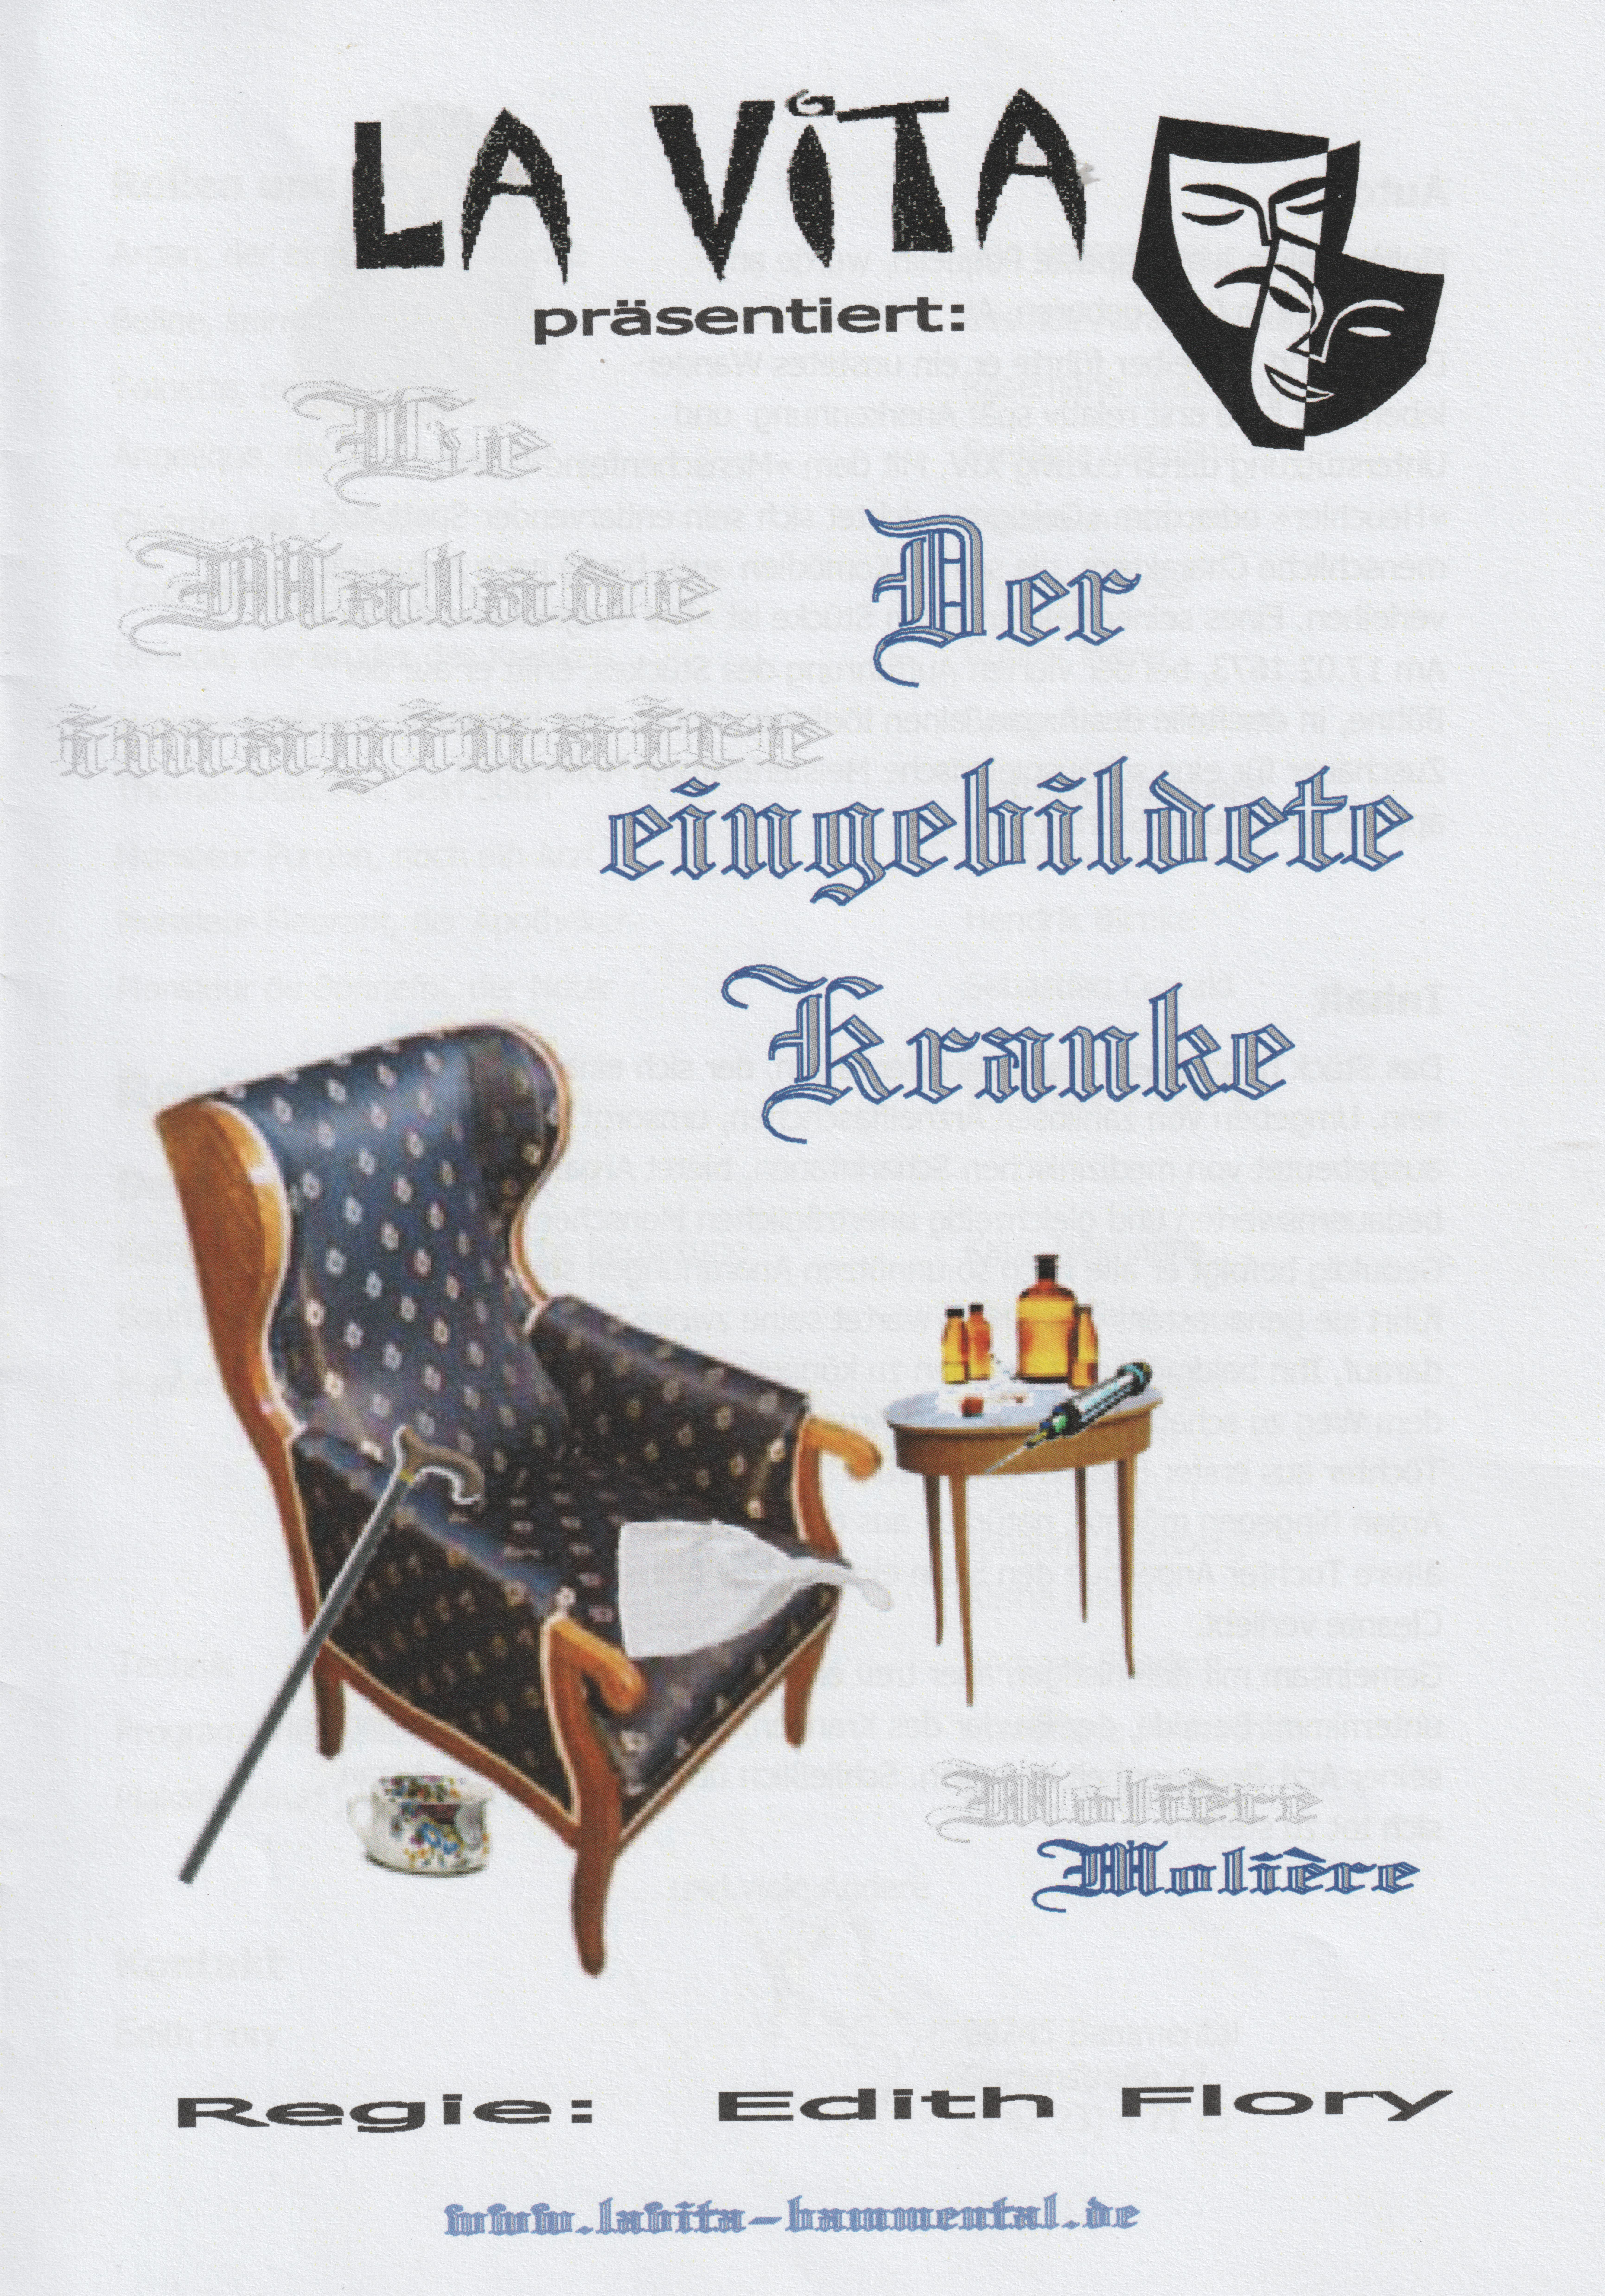 Plakat des Theaterstücks "Der eingebildete Kranke"